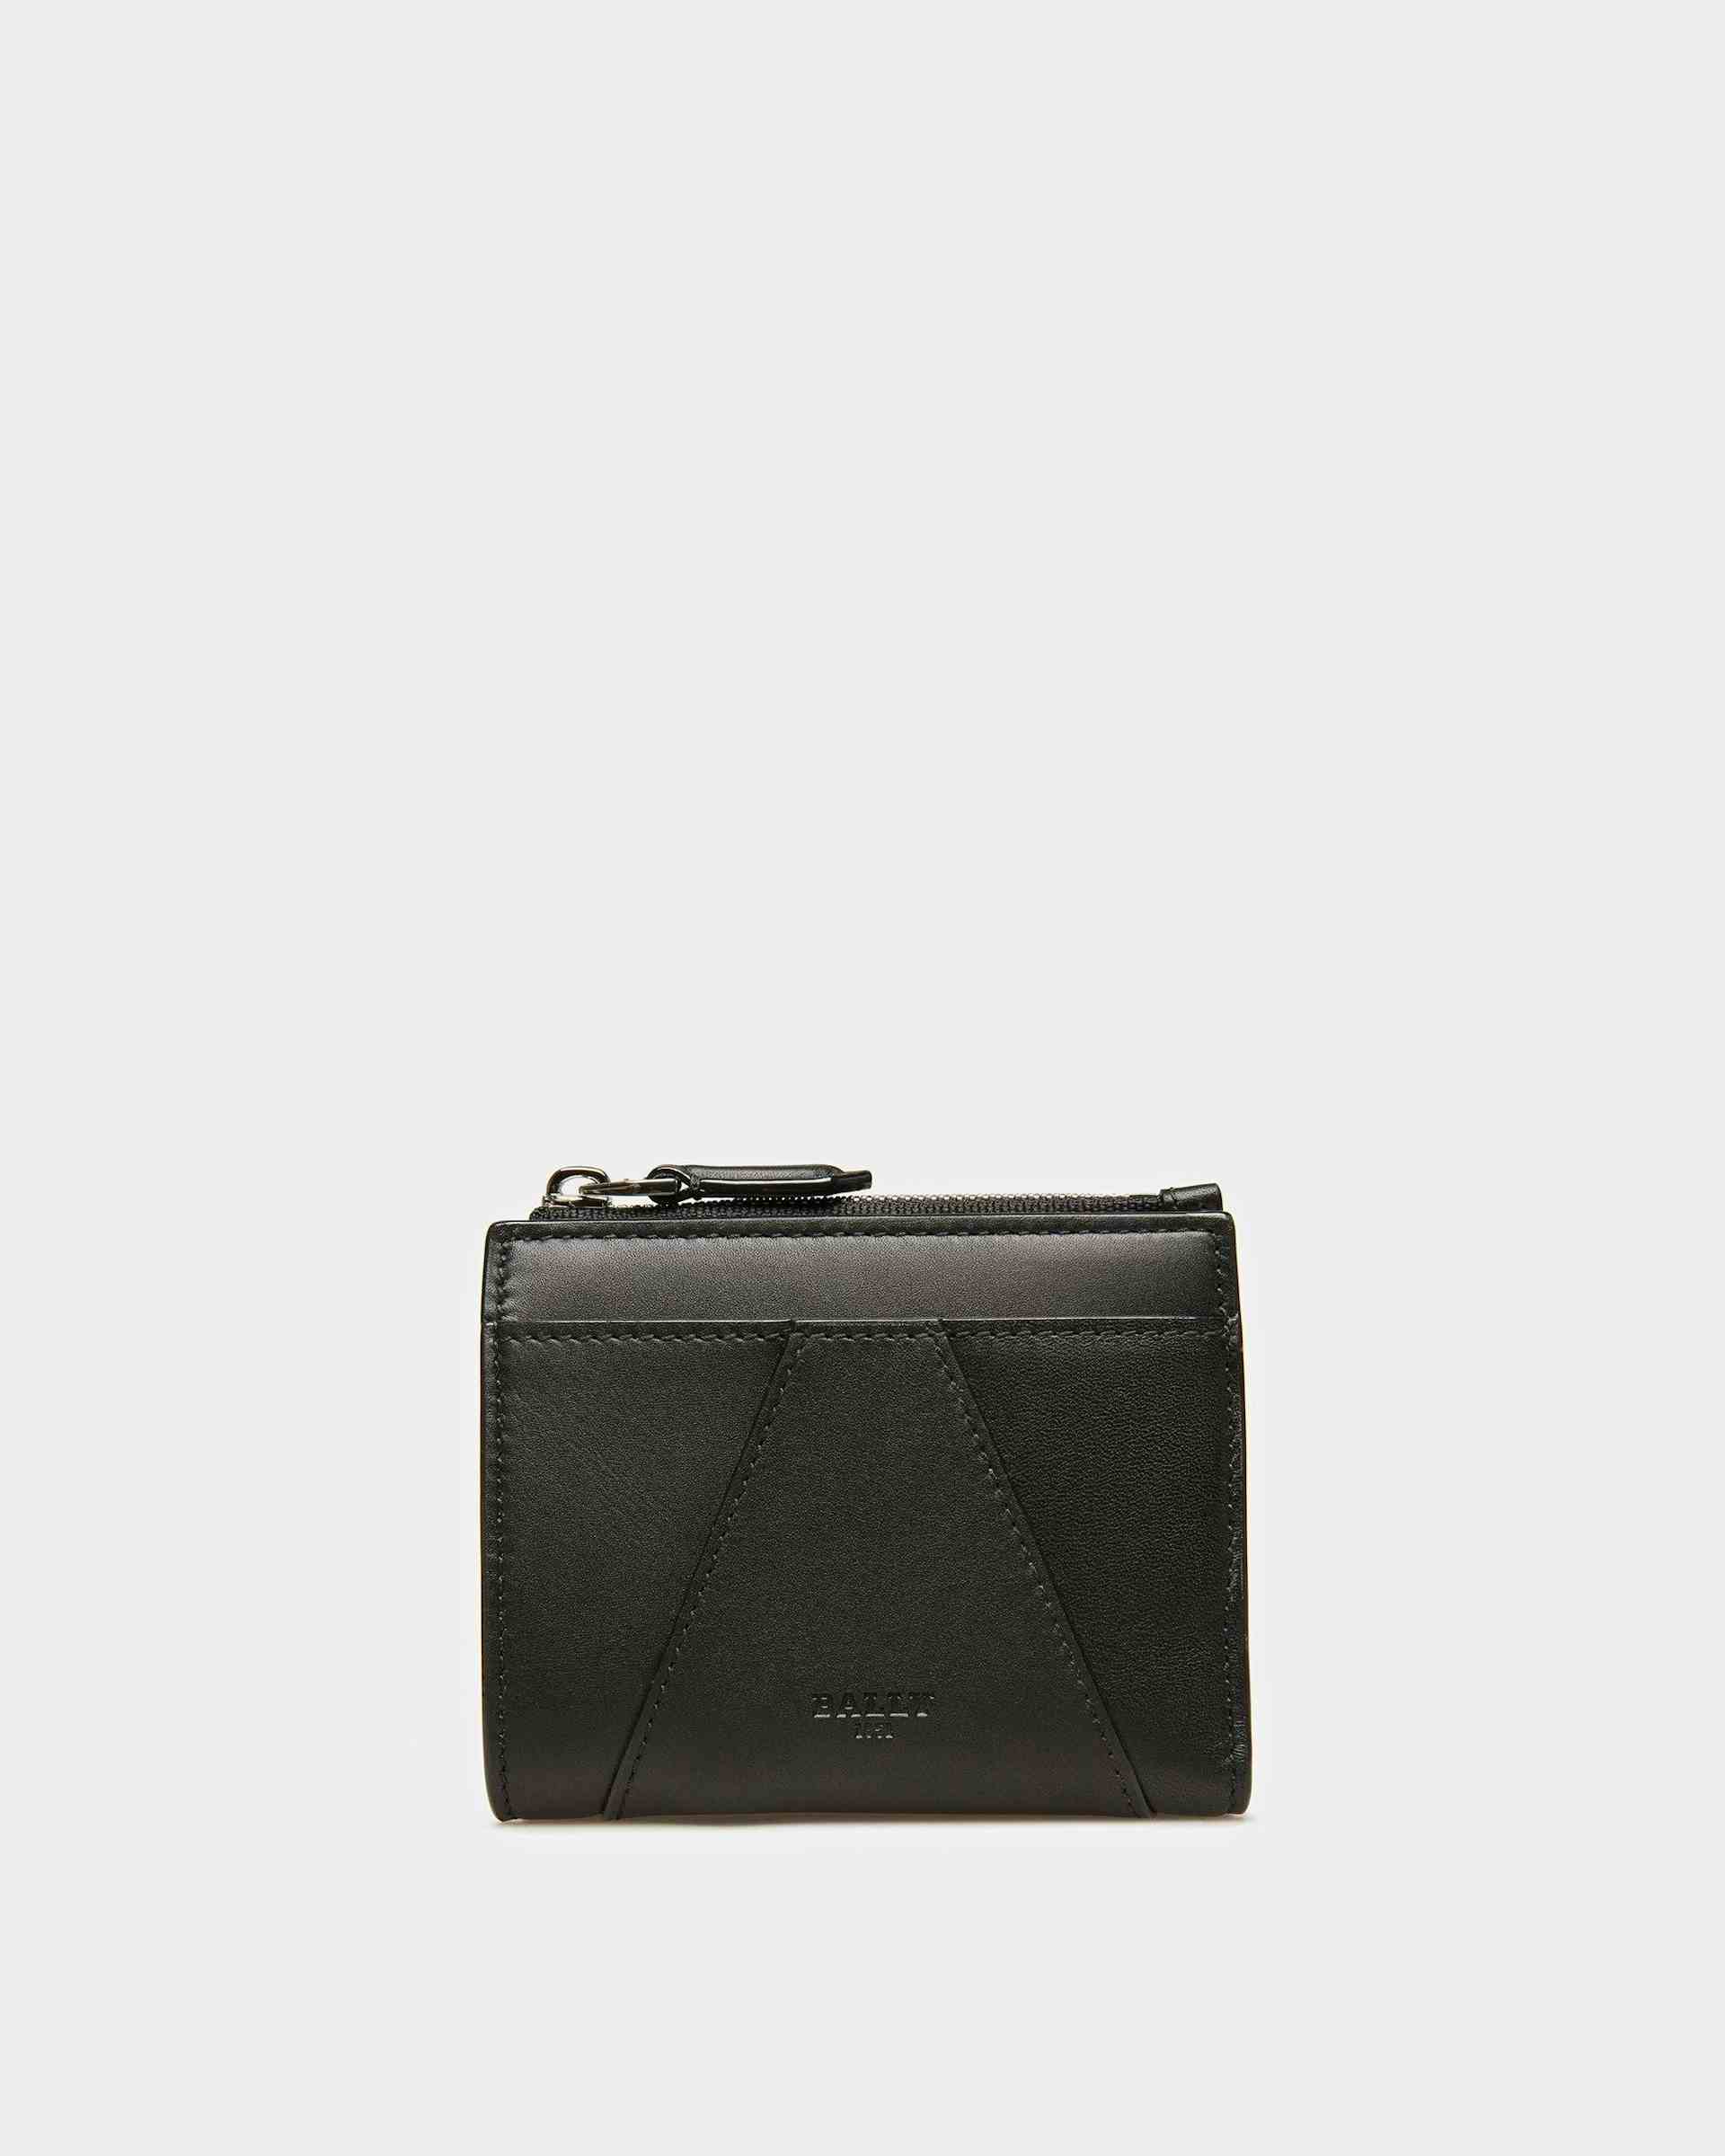 Axeel Leather Wallet In Black - Women's - Bally